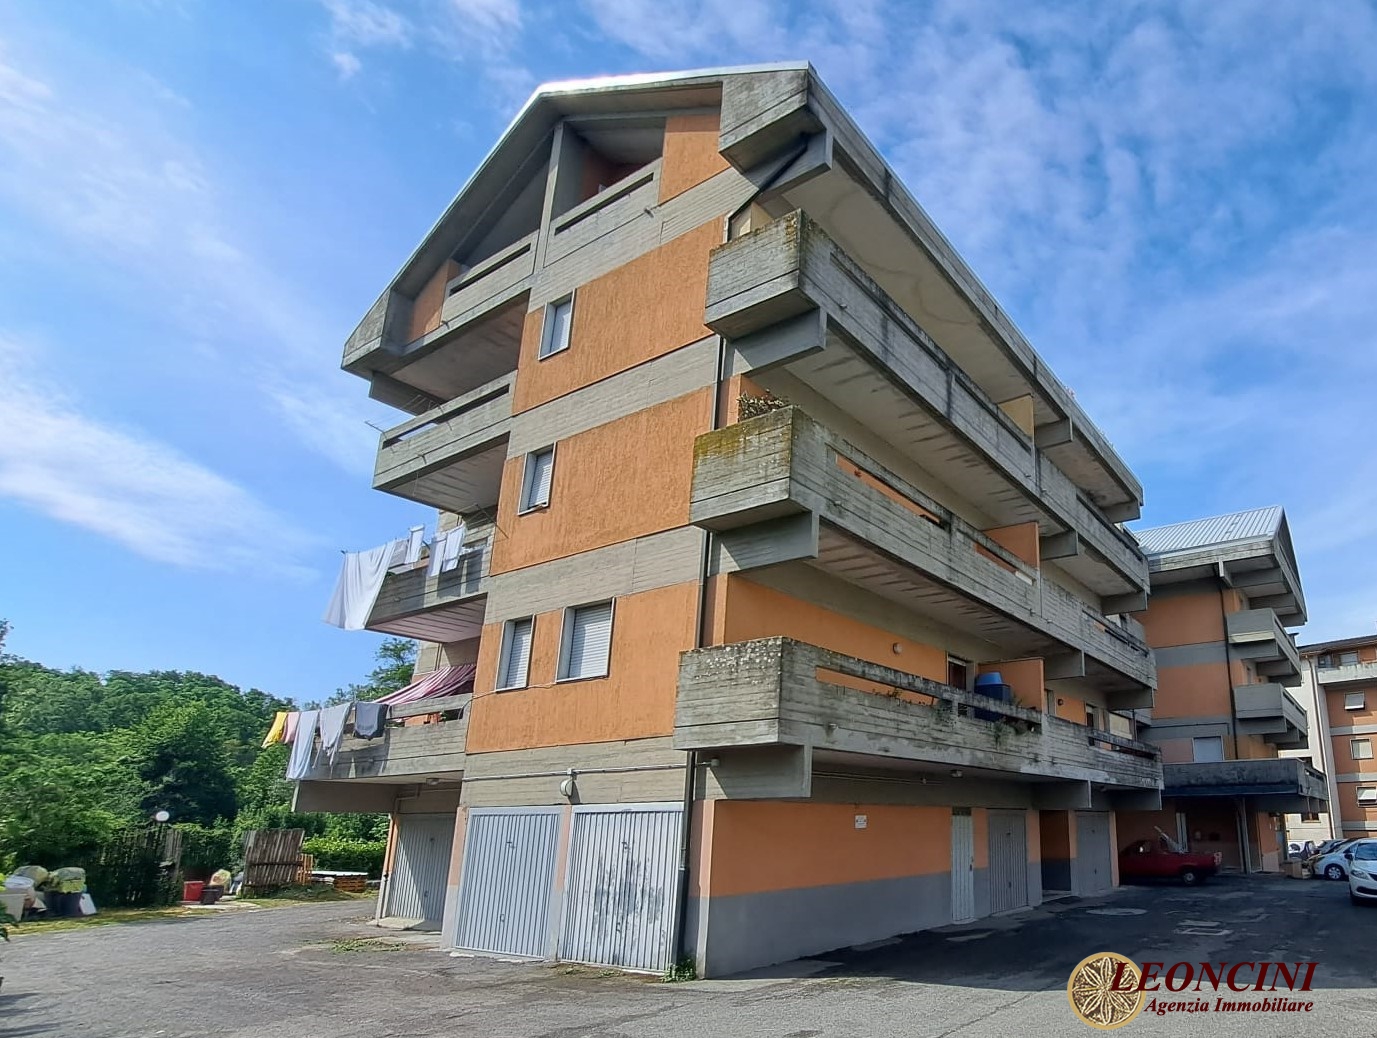 Appartamento in vendita a Villafranca in Lunigiana, 3 locali, prezzo € 85.000 | PortaleAgenzieImmobiliari.it